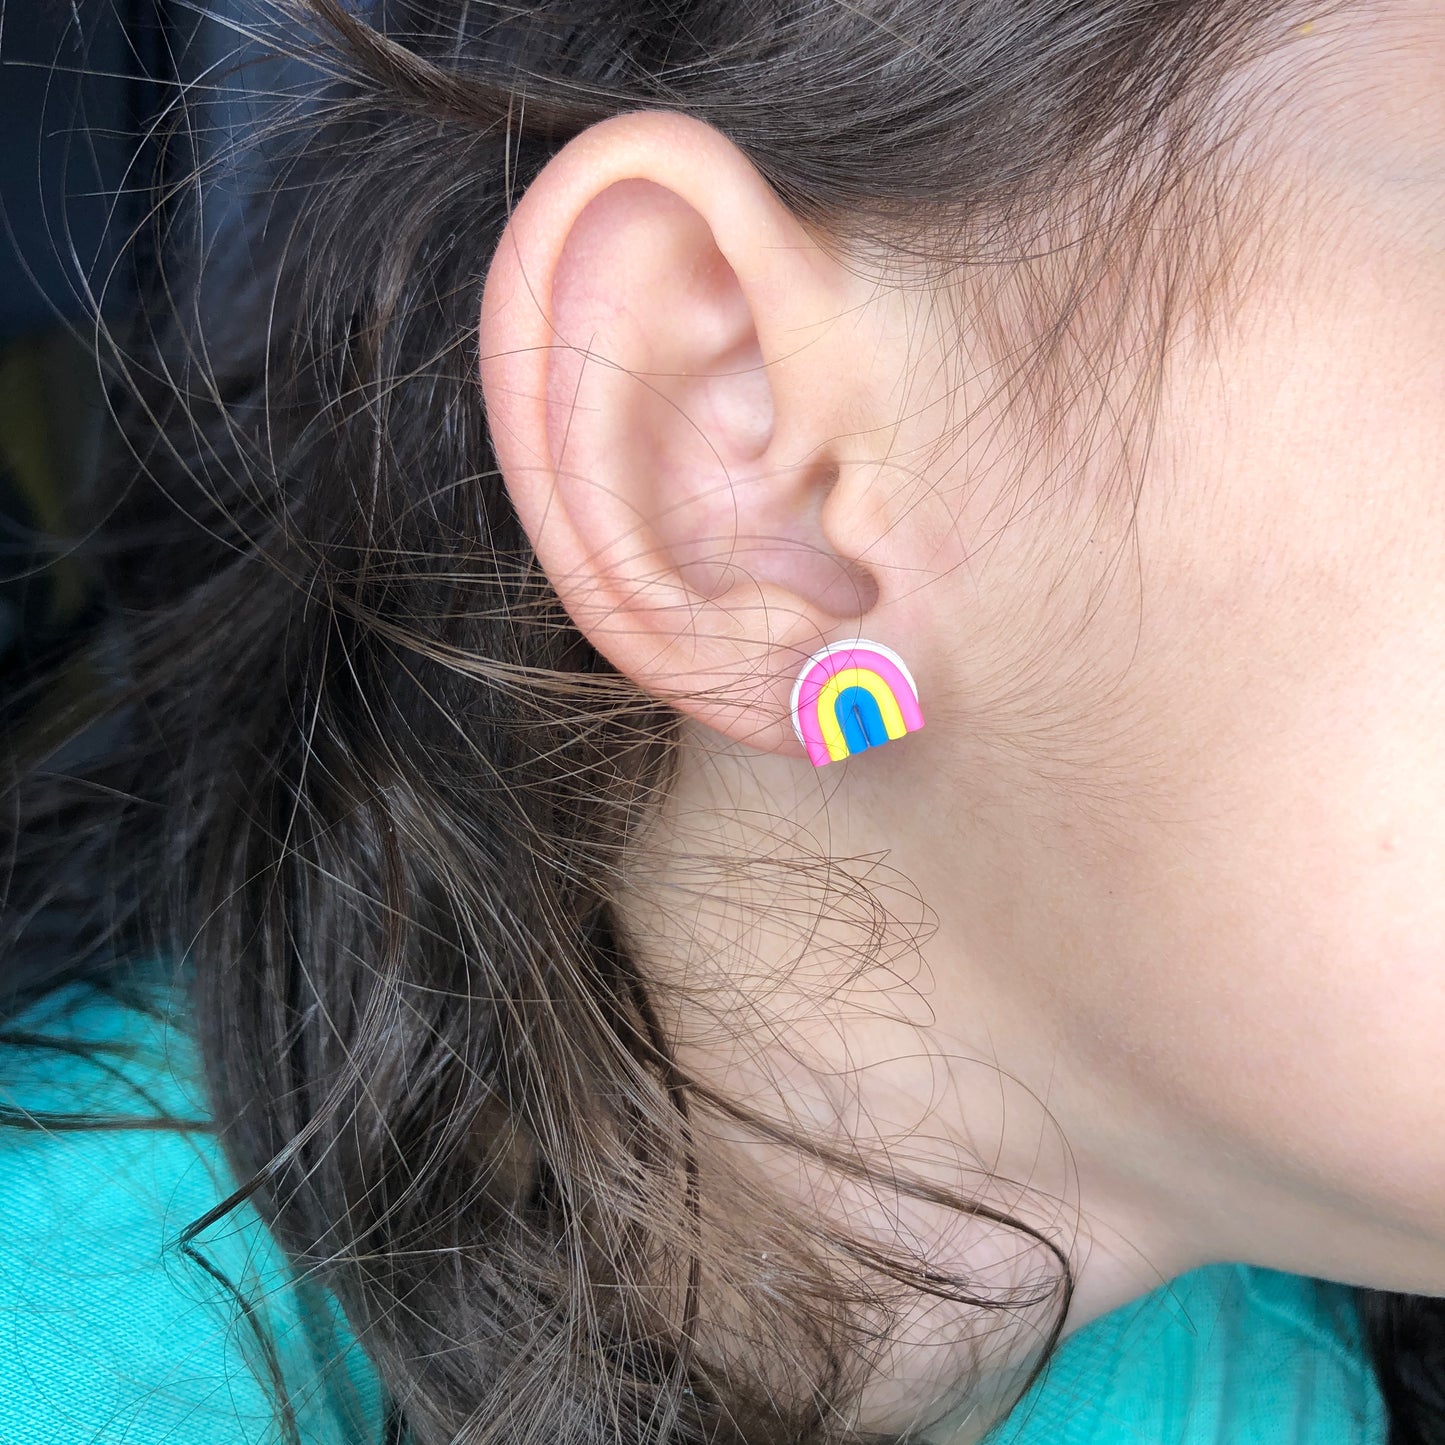 PRIDE Pansexual Flag Rainbow Earrings Stud